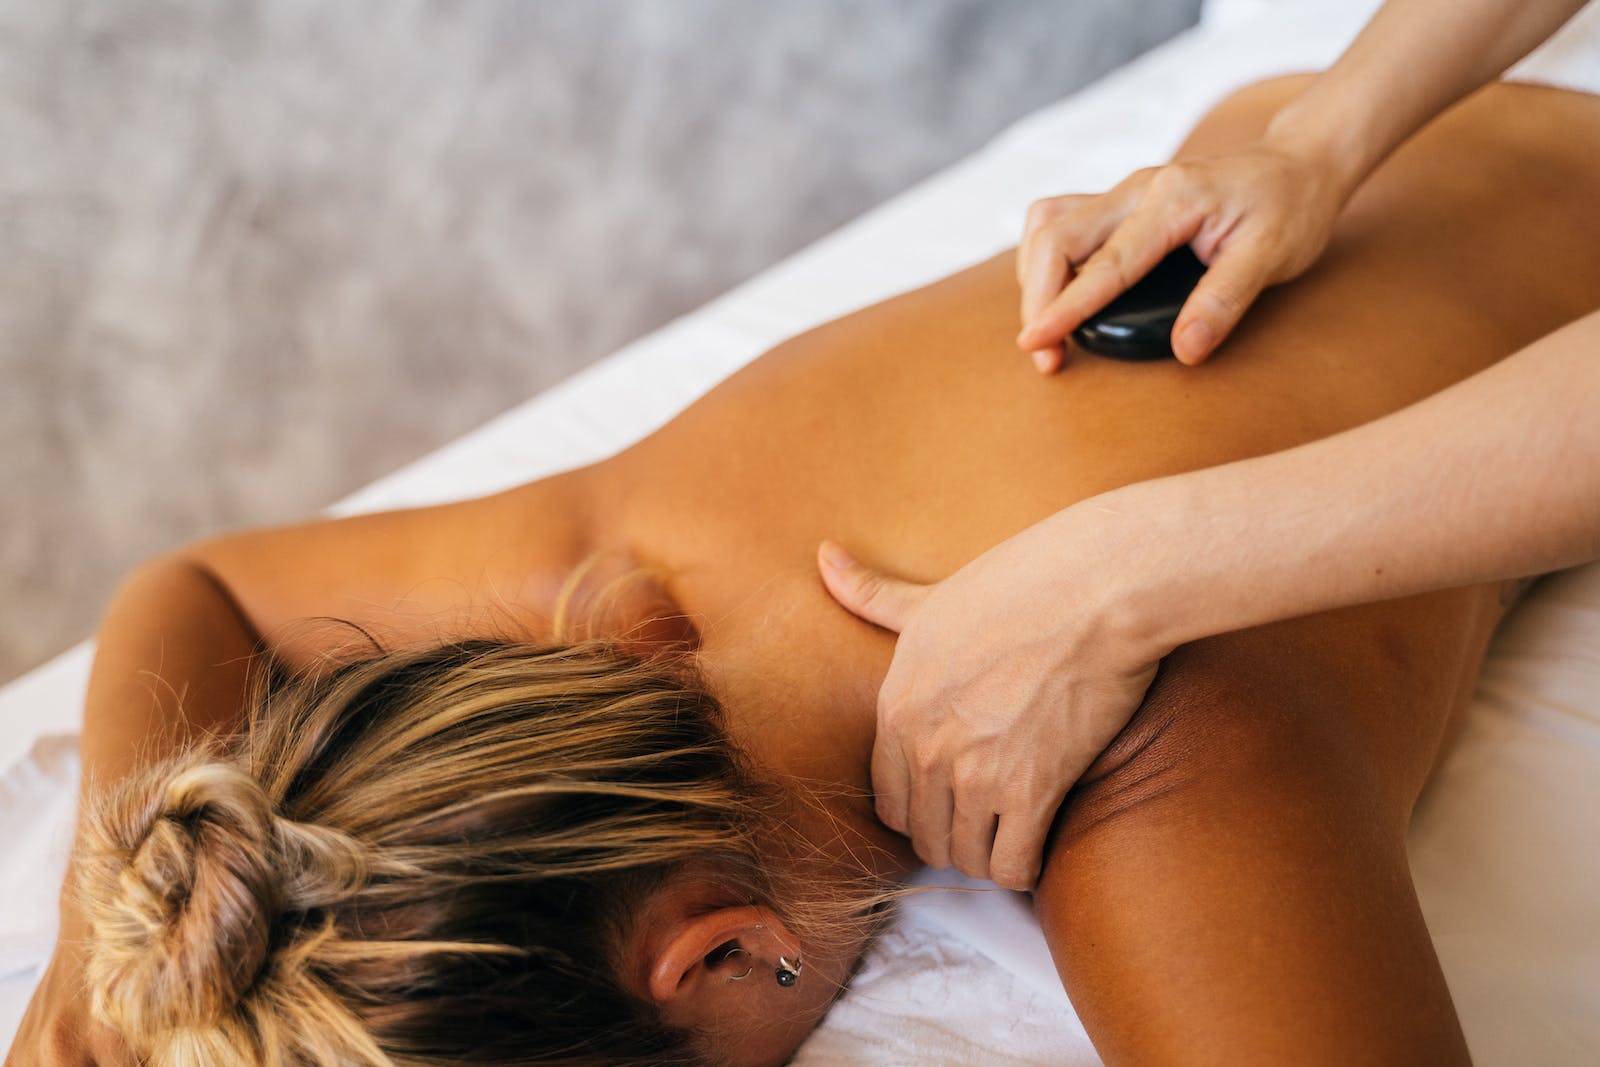 een persoon geeft een mevrouw een hot stone massage